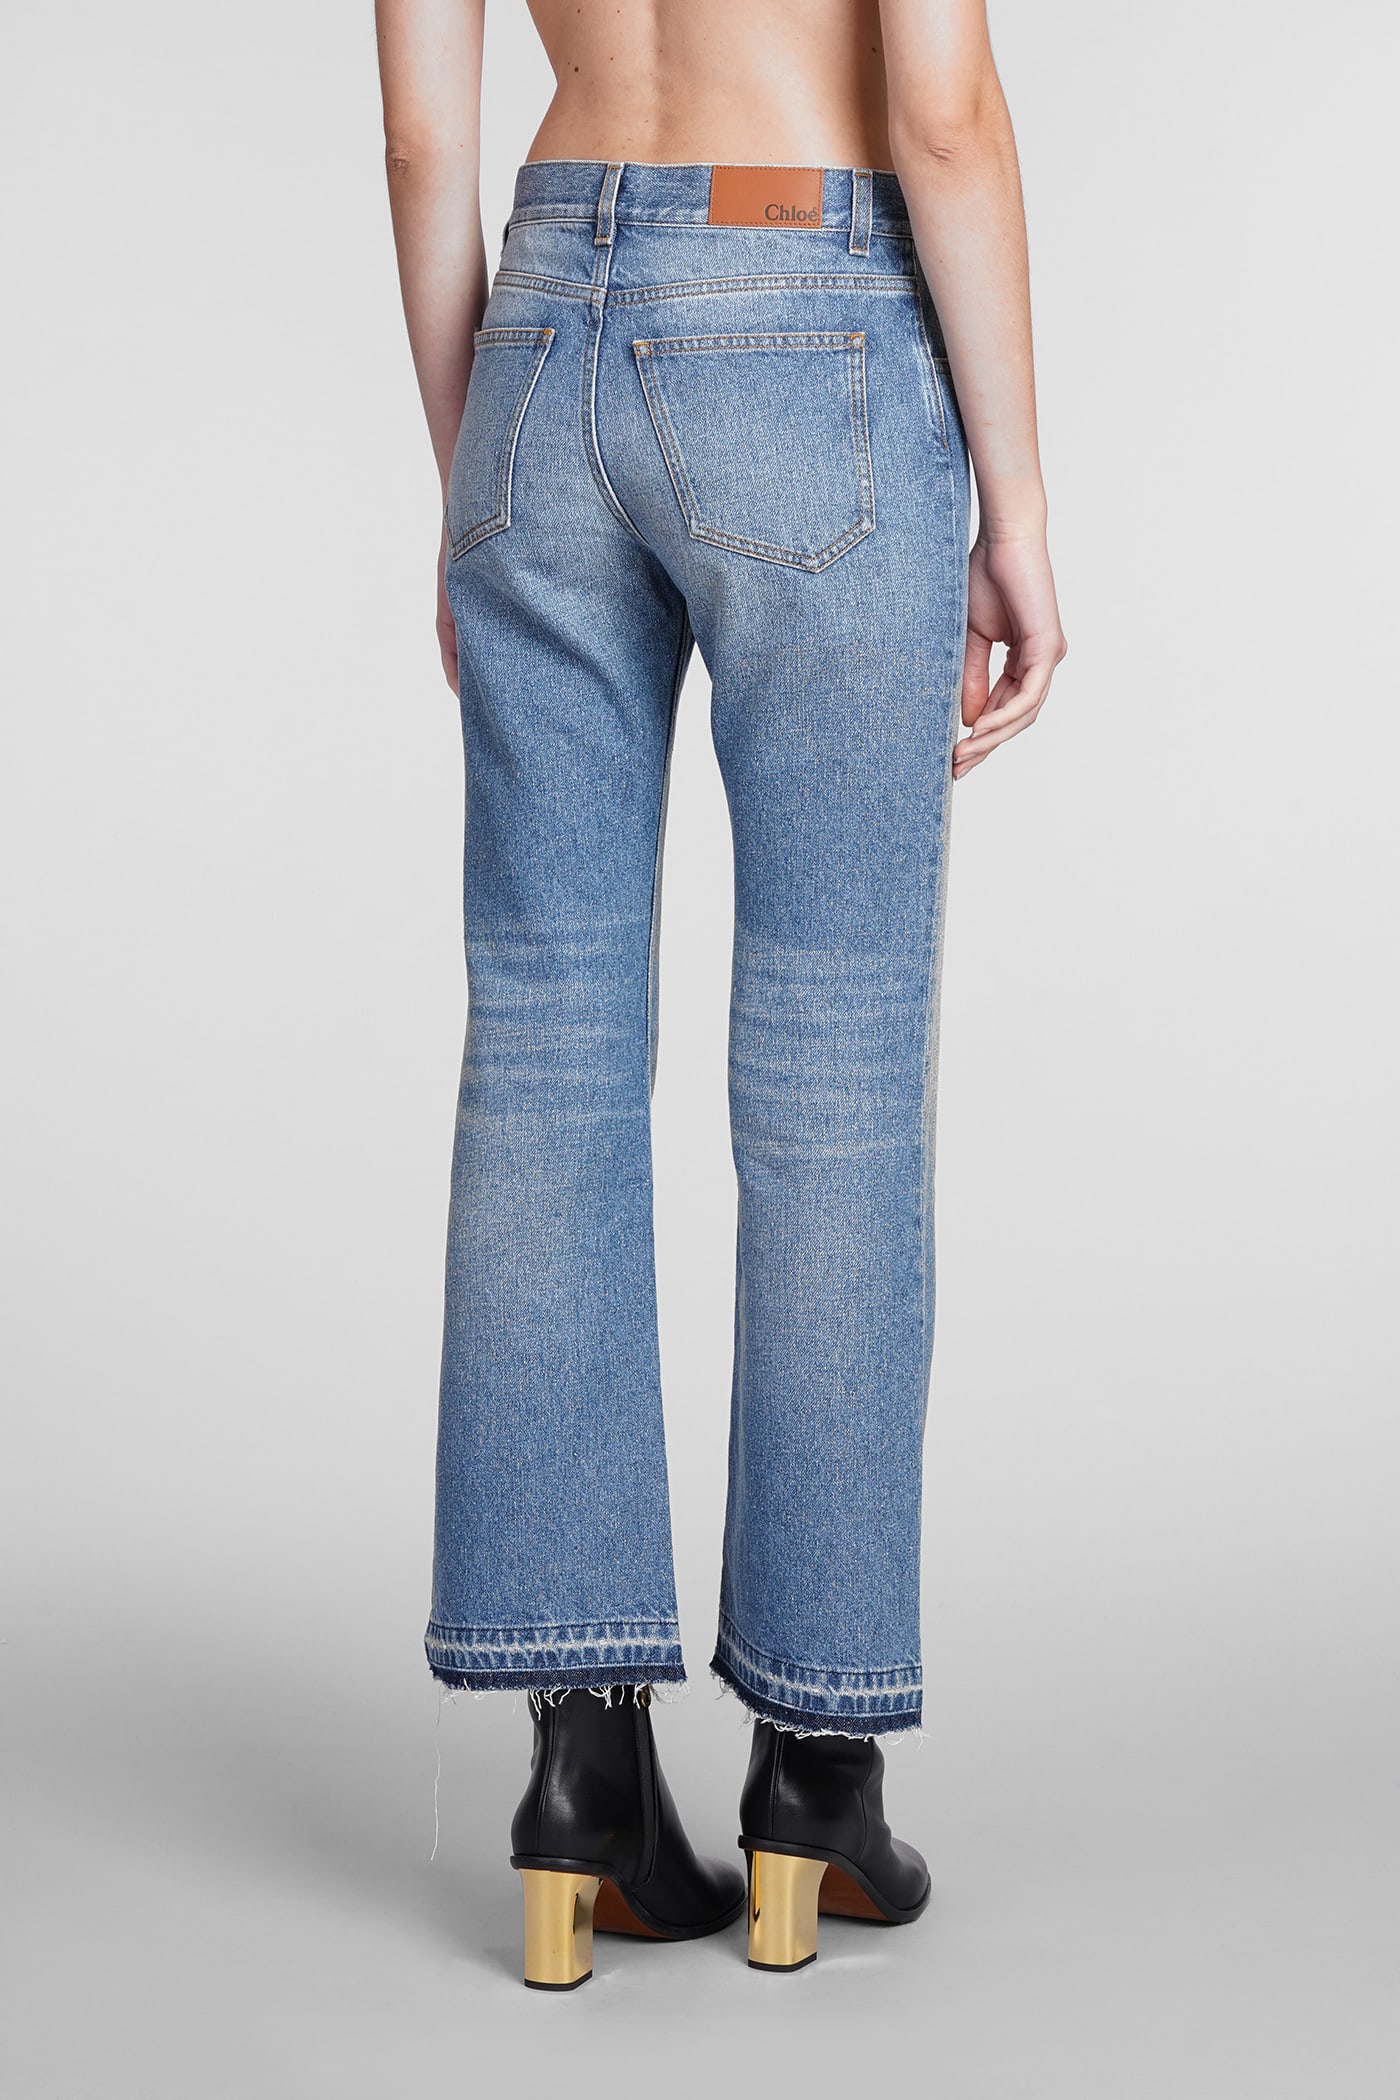 Shop Chloé Jeans In Blue Cotton